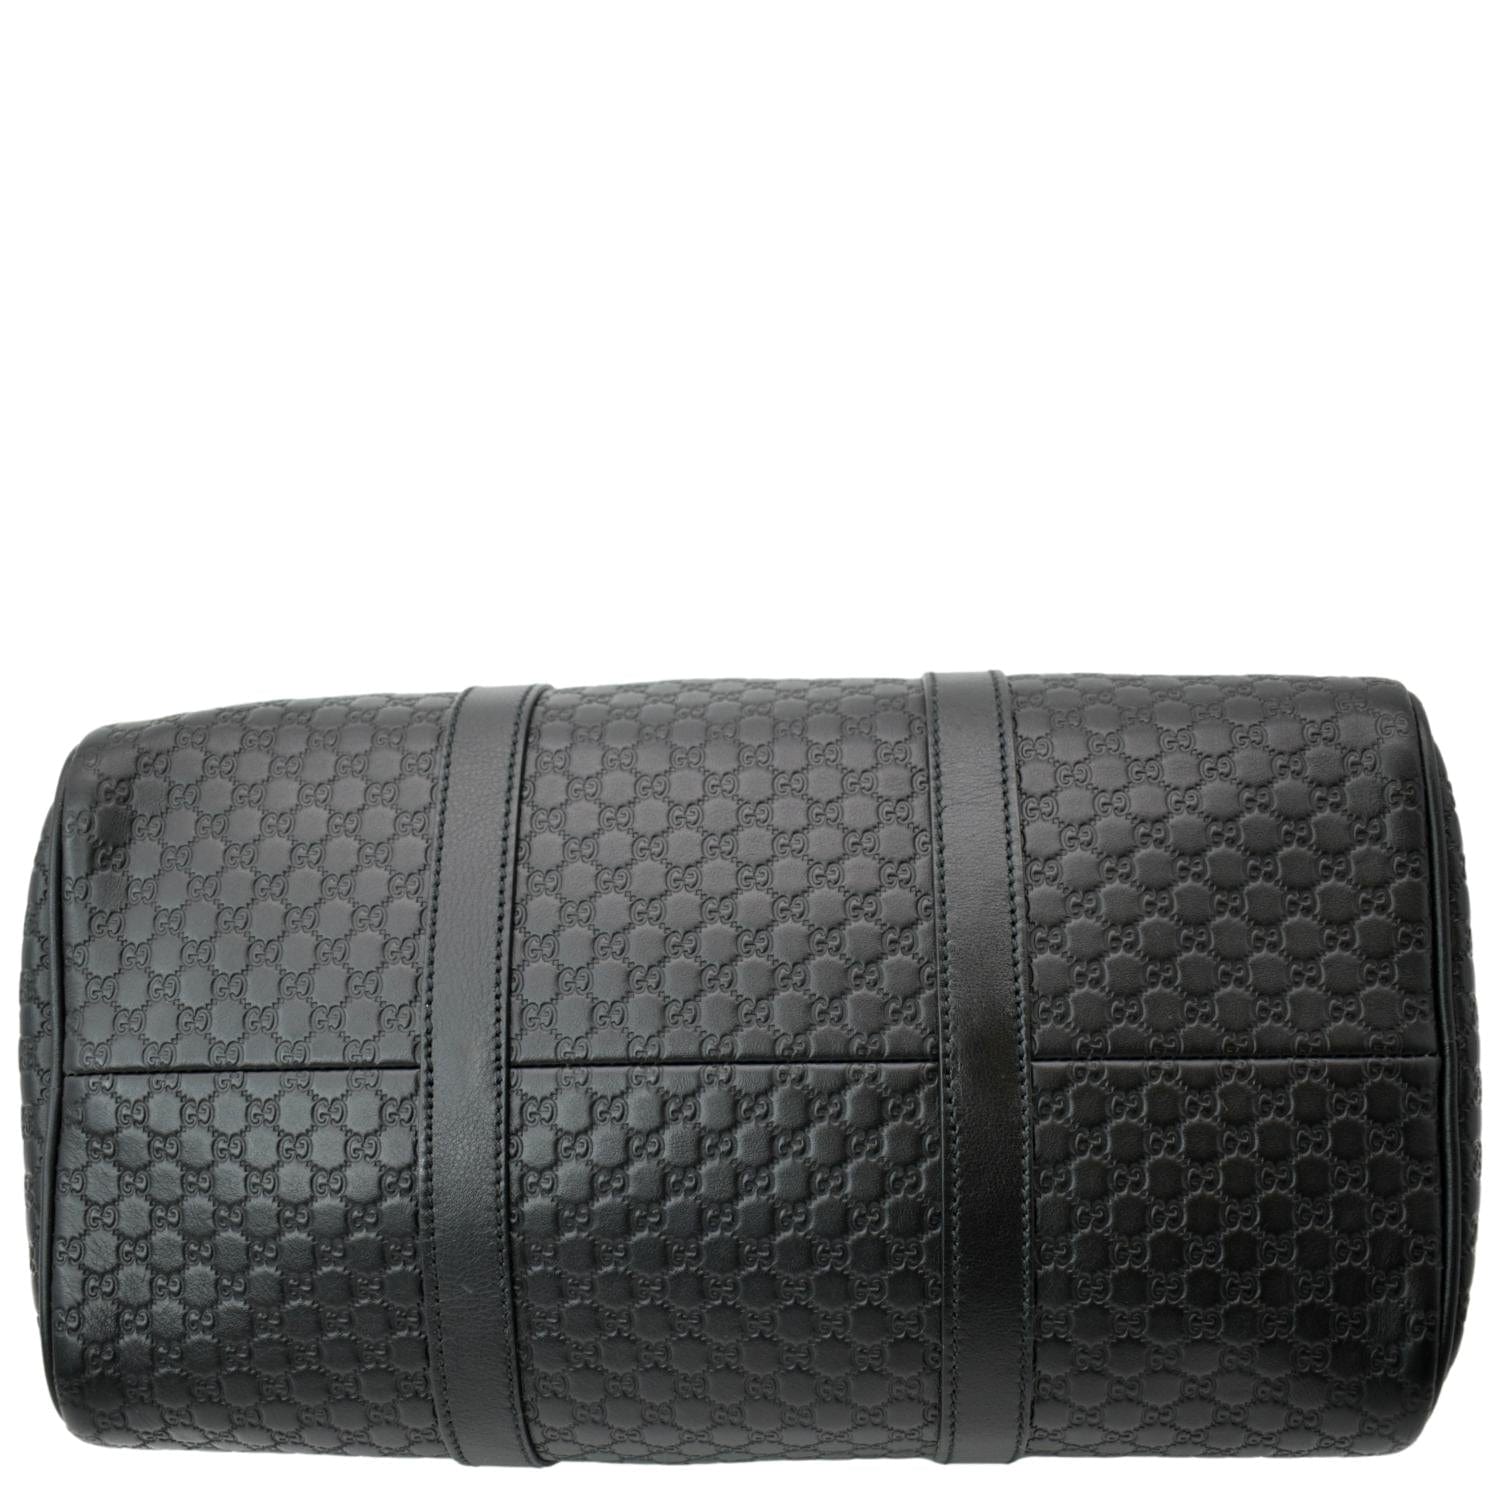 Gucci Medium Black Leather Handbag Boston Microguccissima w/Det Strap more  Color